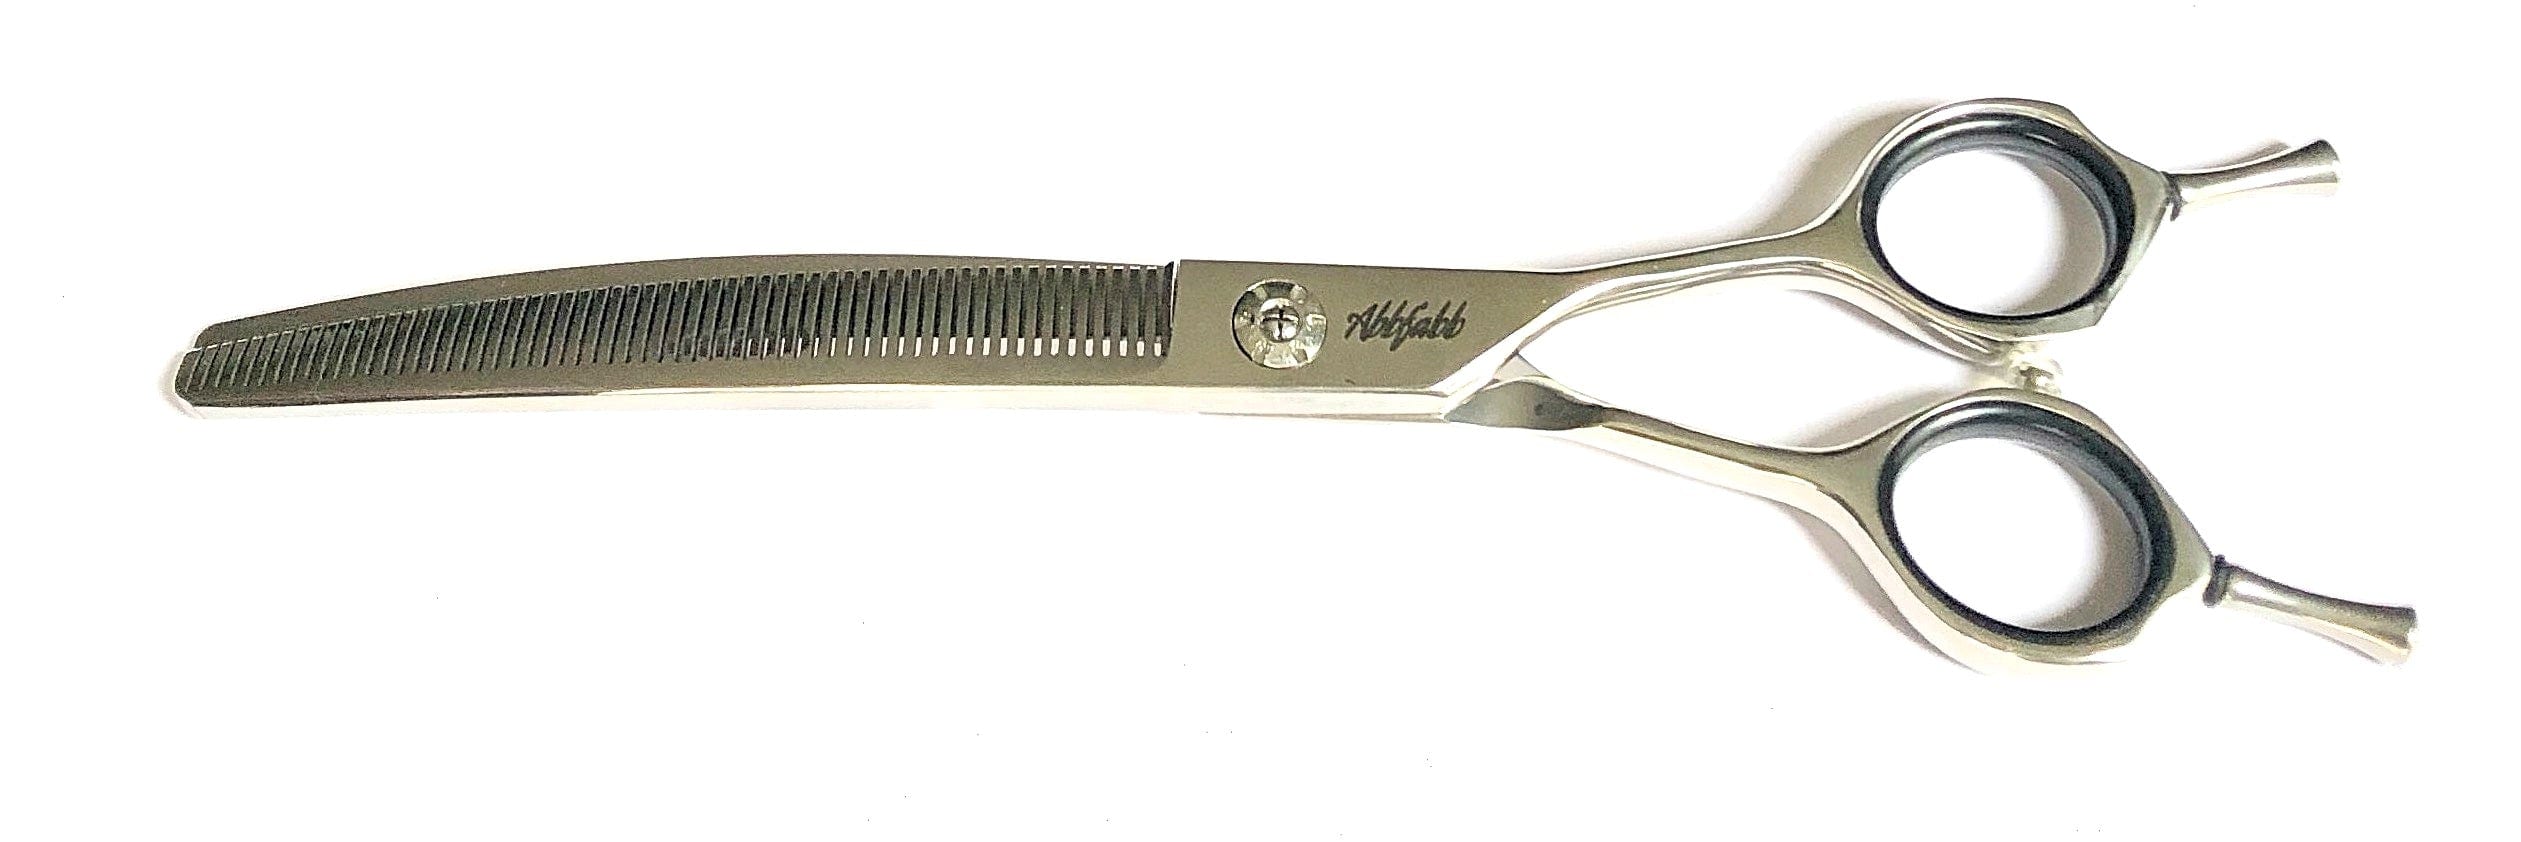 Abbfabb Grooming Scissors Ltd 7" 60 Micro Serrated Teeth Reversible Curved Blending Dog Grooming Scissor. A 7" Flippable Curved Blending Dog Grooming Scissors 